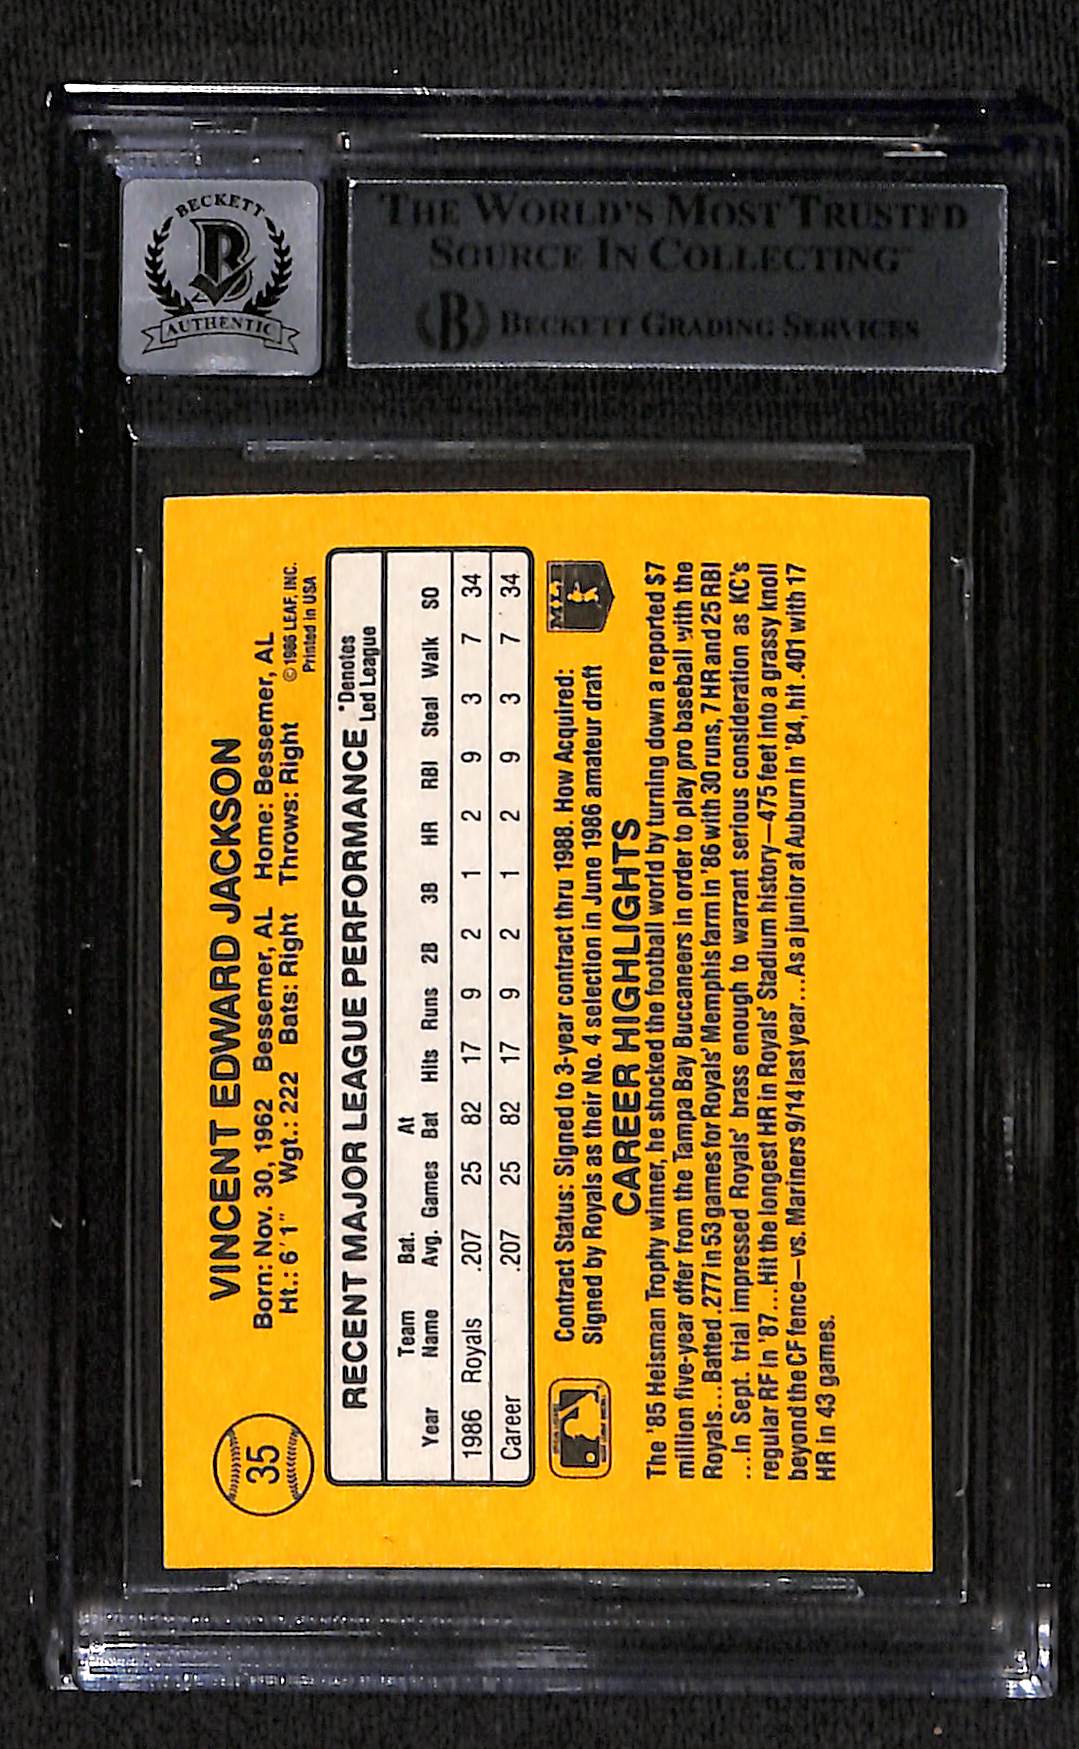 1987 DONRUSS BO JACKSON AUTO RC ROOKIE CARD BAS (2848)